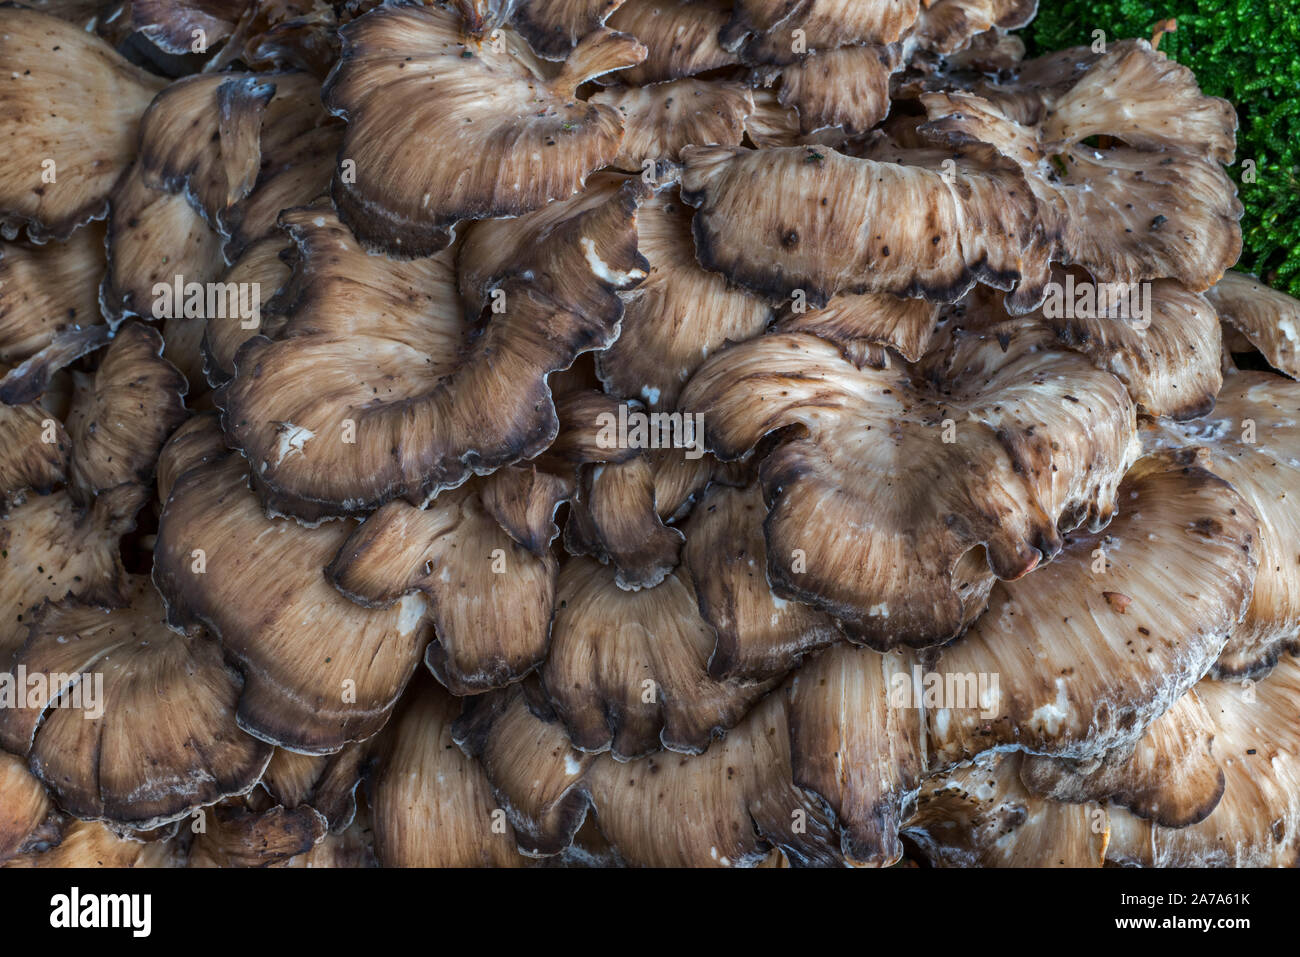 Gallina-di-il-boschi / ram's testa / testa di pecora (Grifola frondosa), cluster di funghi polypore a base di quercia Foto Stock